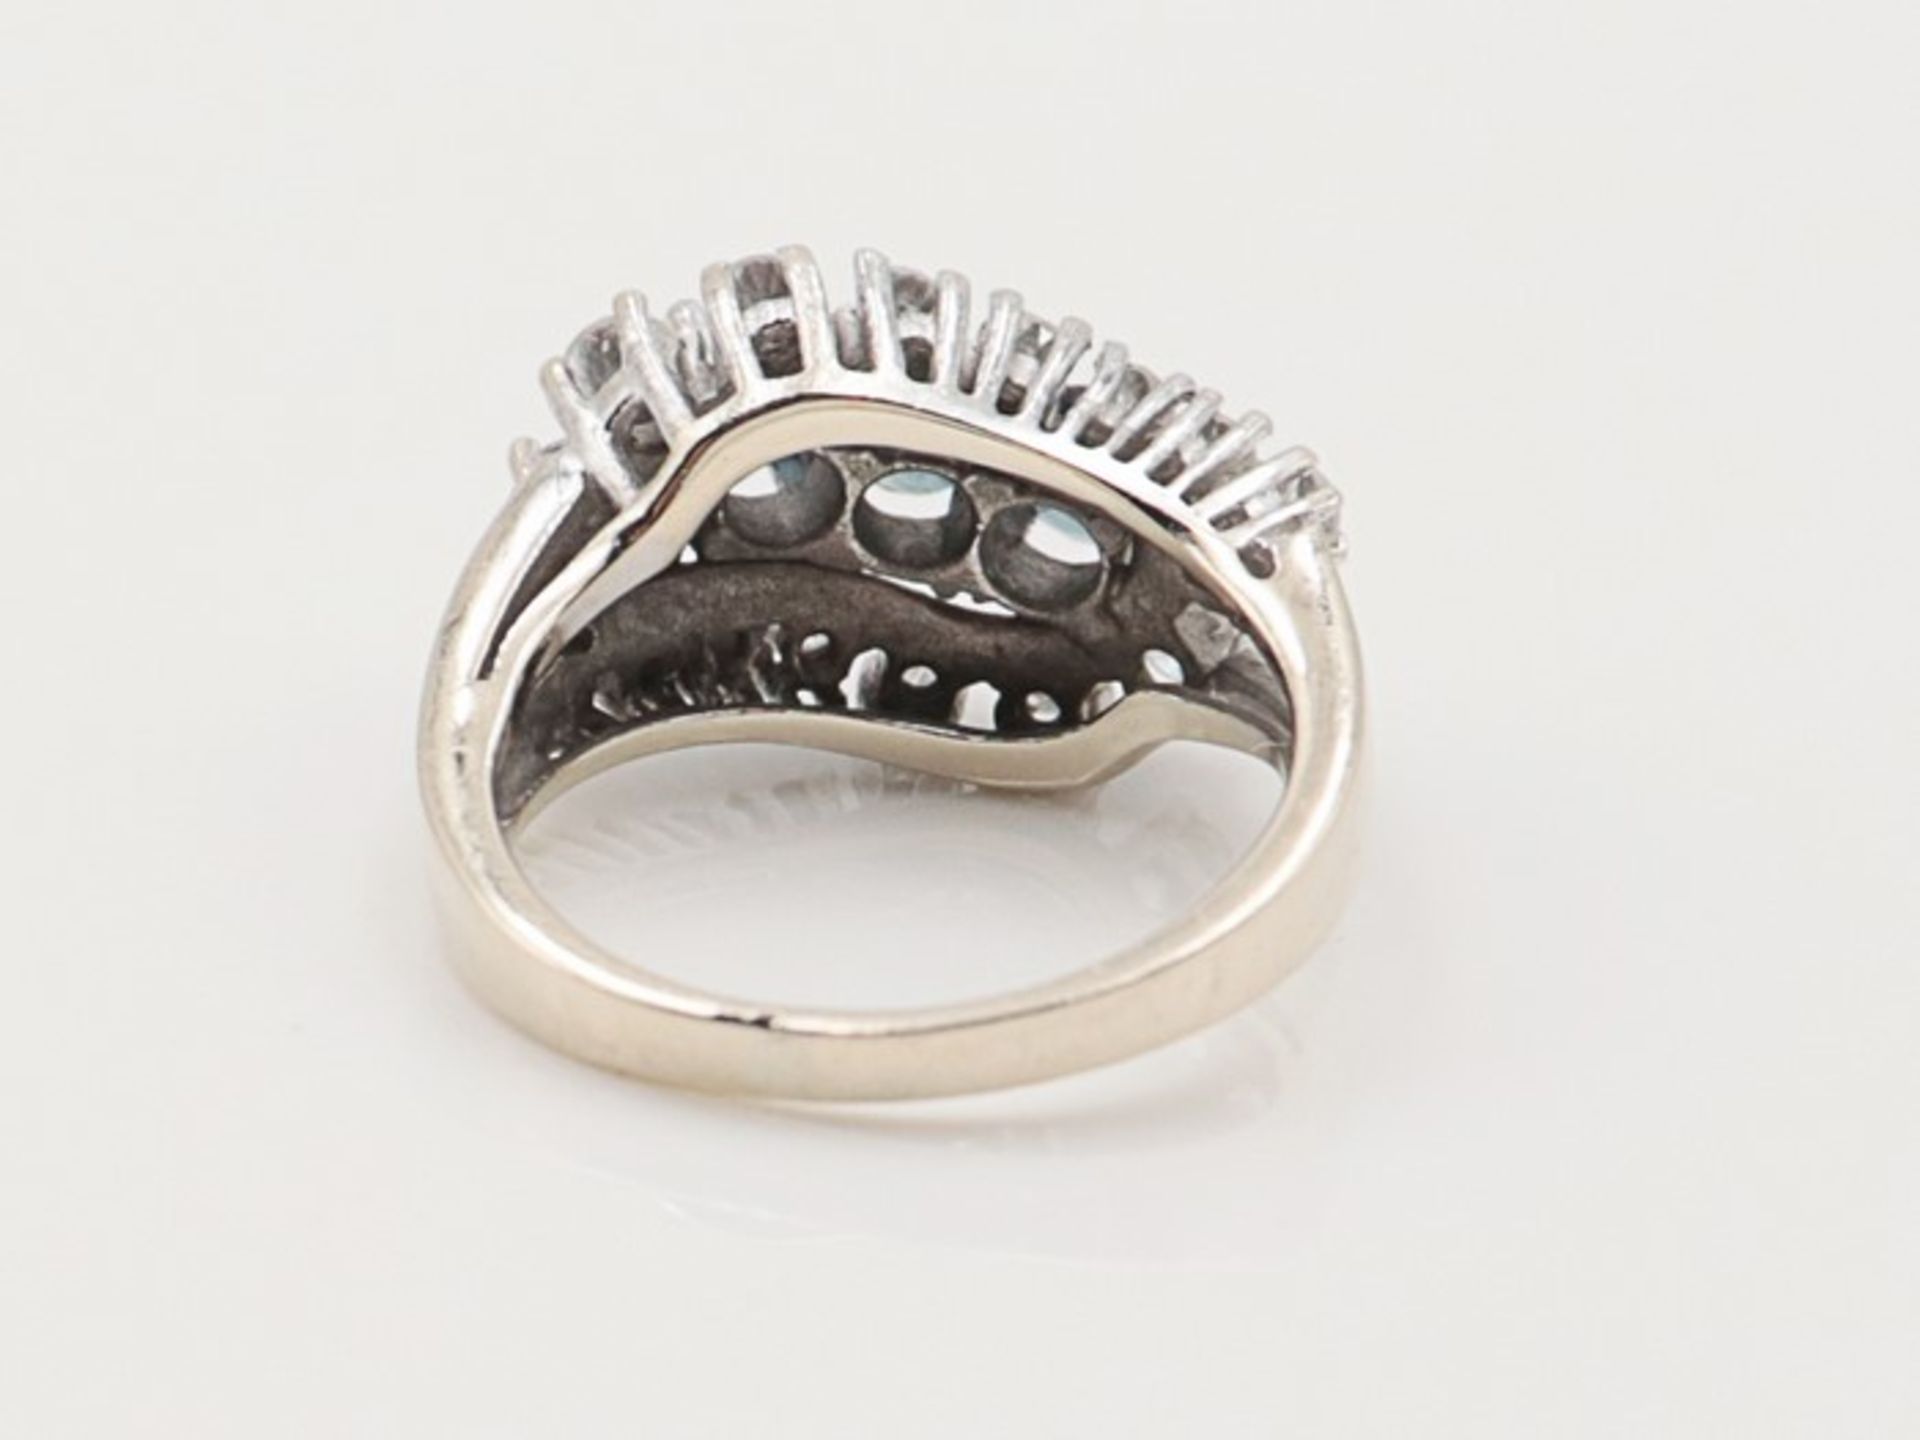 Diamant/Saphir - DamenringWG 585, wellenförmiger, durchbrochener Ringkopf, besetzt mit 3 Saphiren u. - Bild 4 aus 4